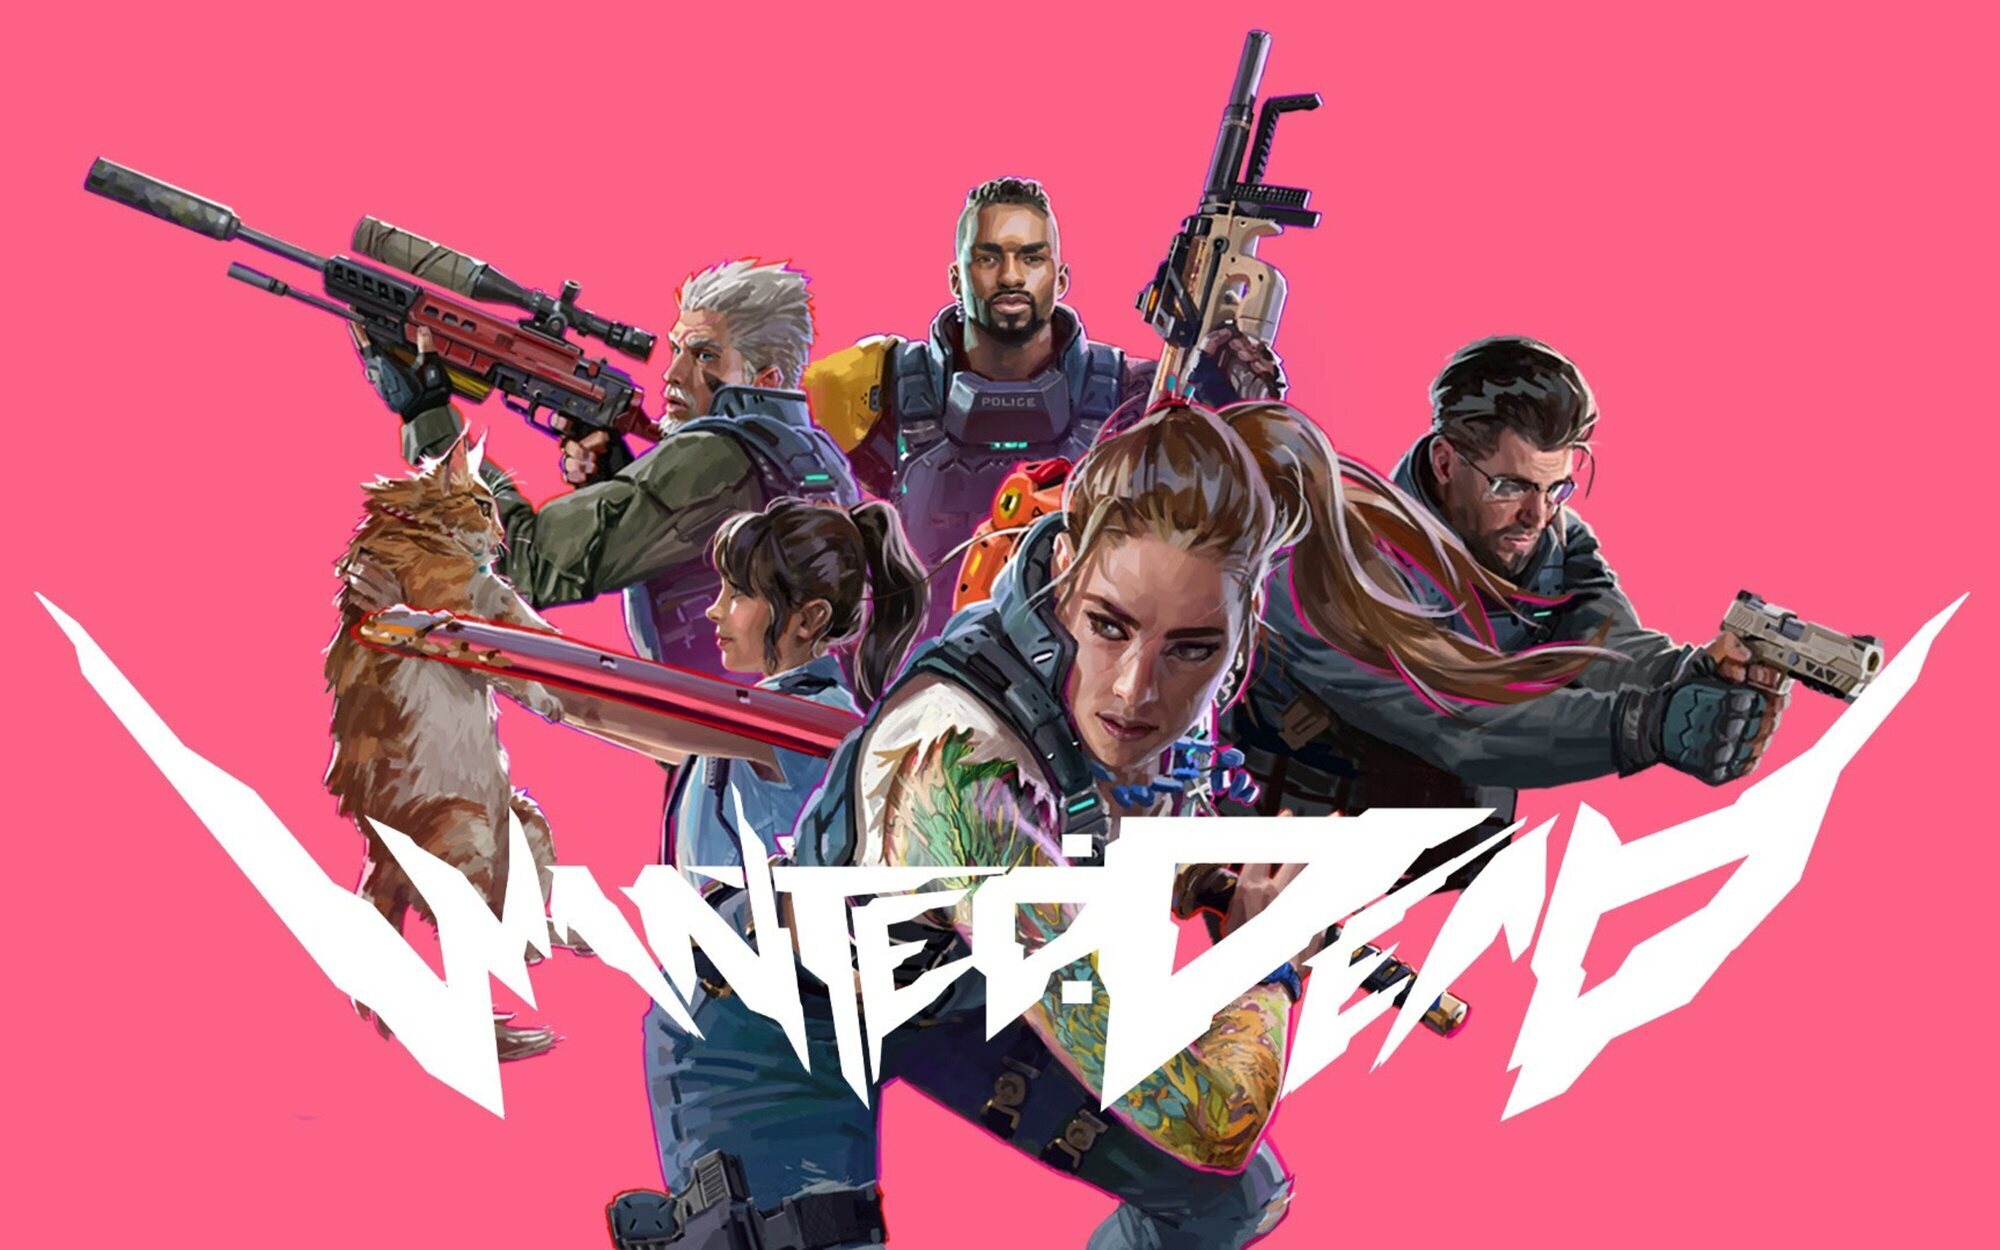 Análisis de 'Wanted: Dead' para PC, acción mamarracha de otra época